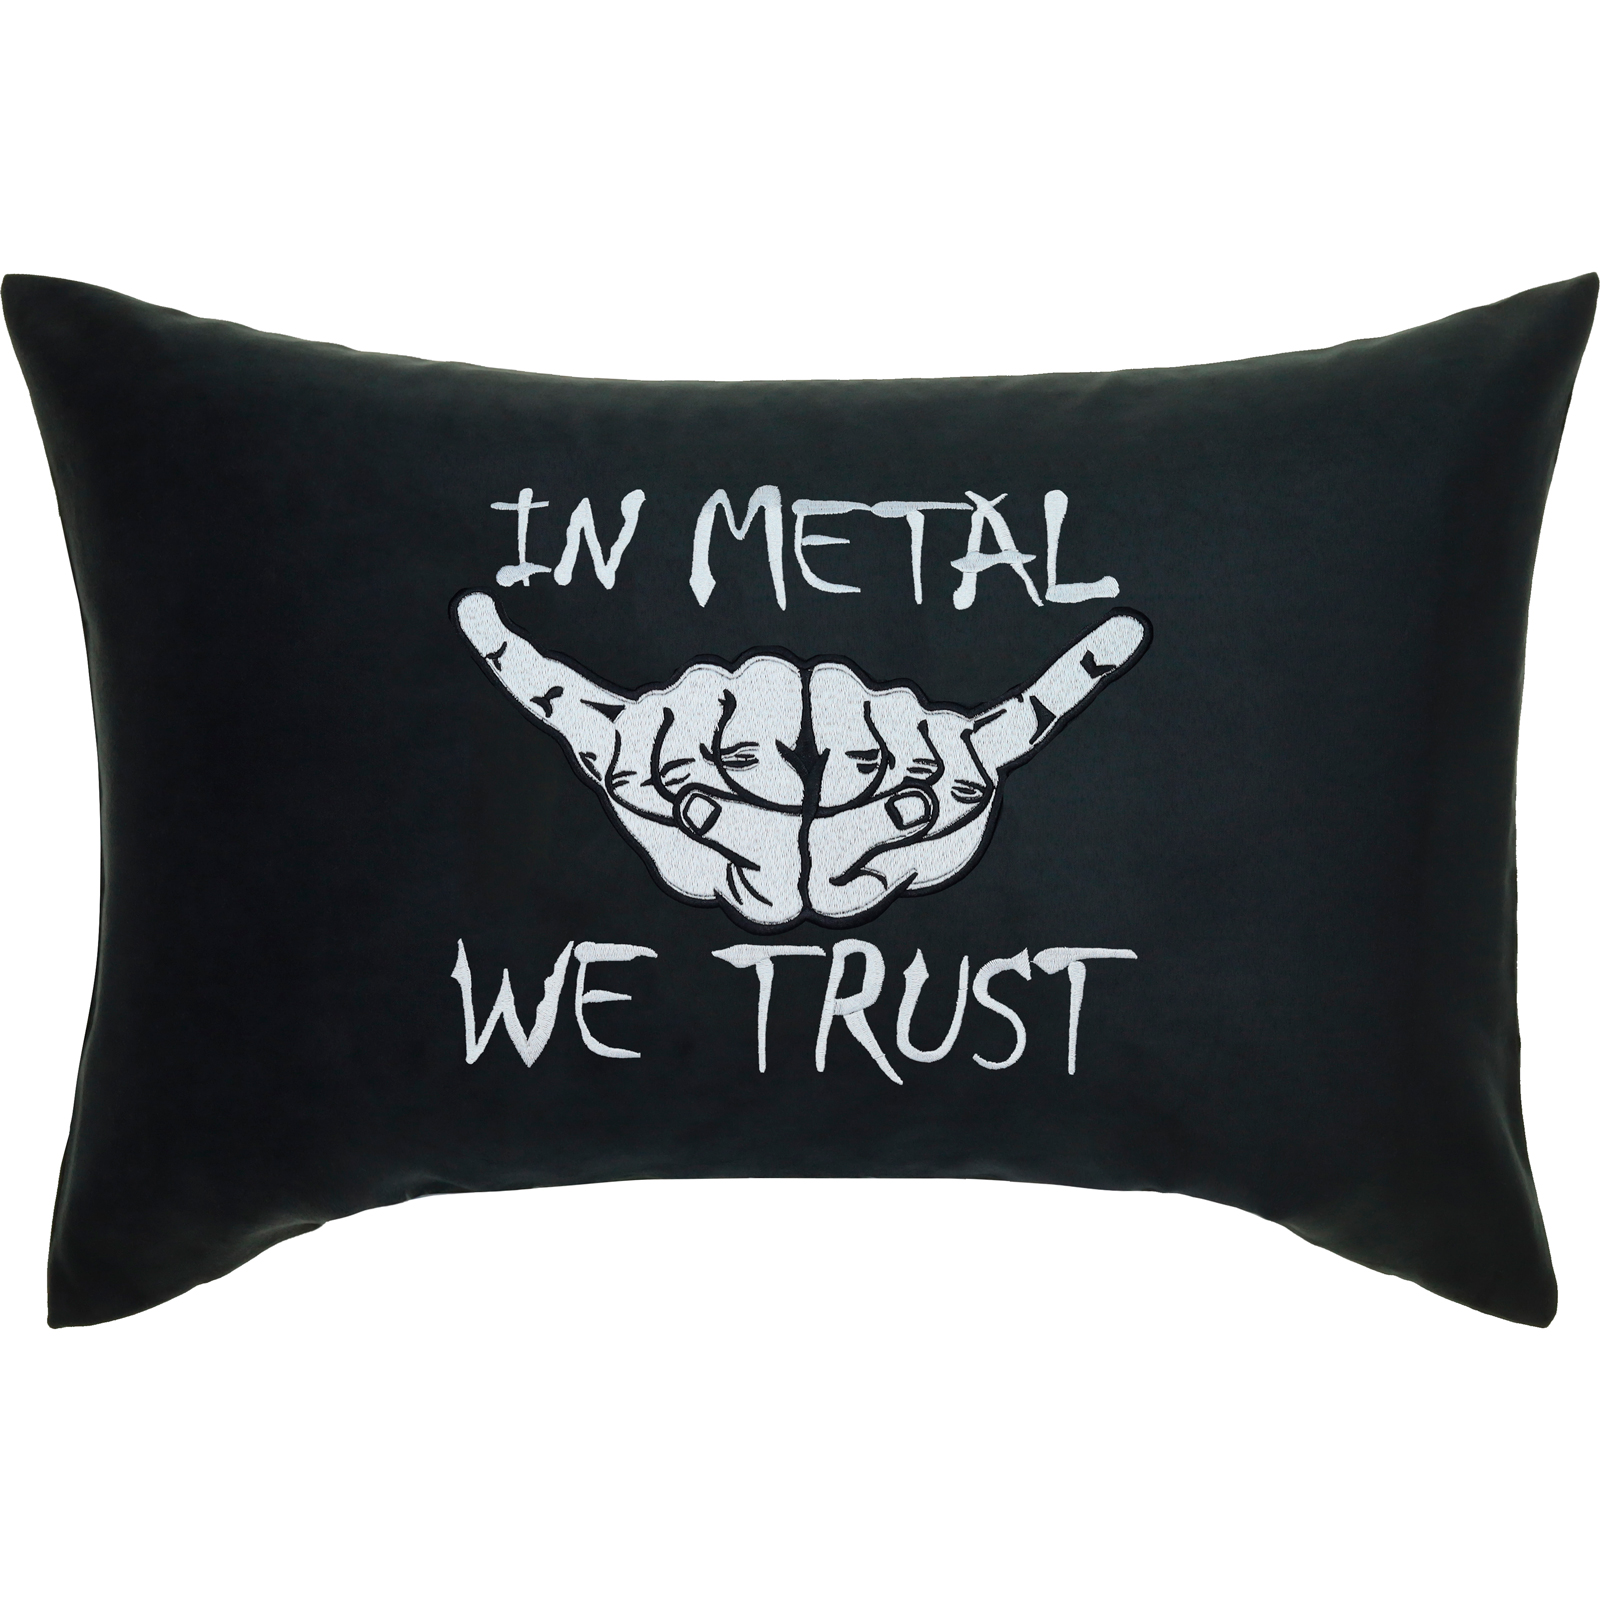 In Metal We Trust